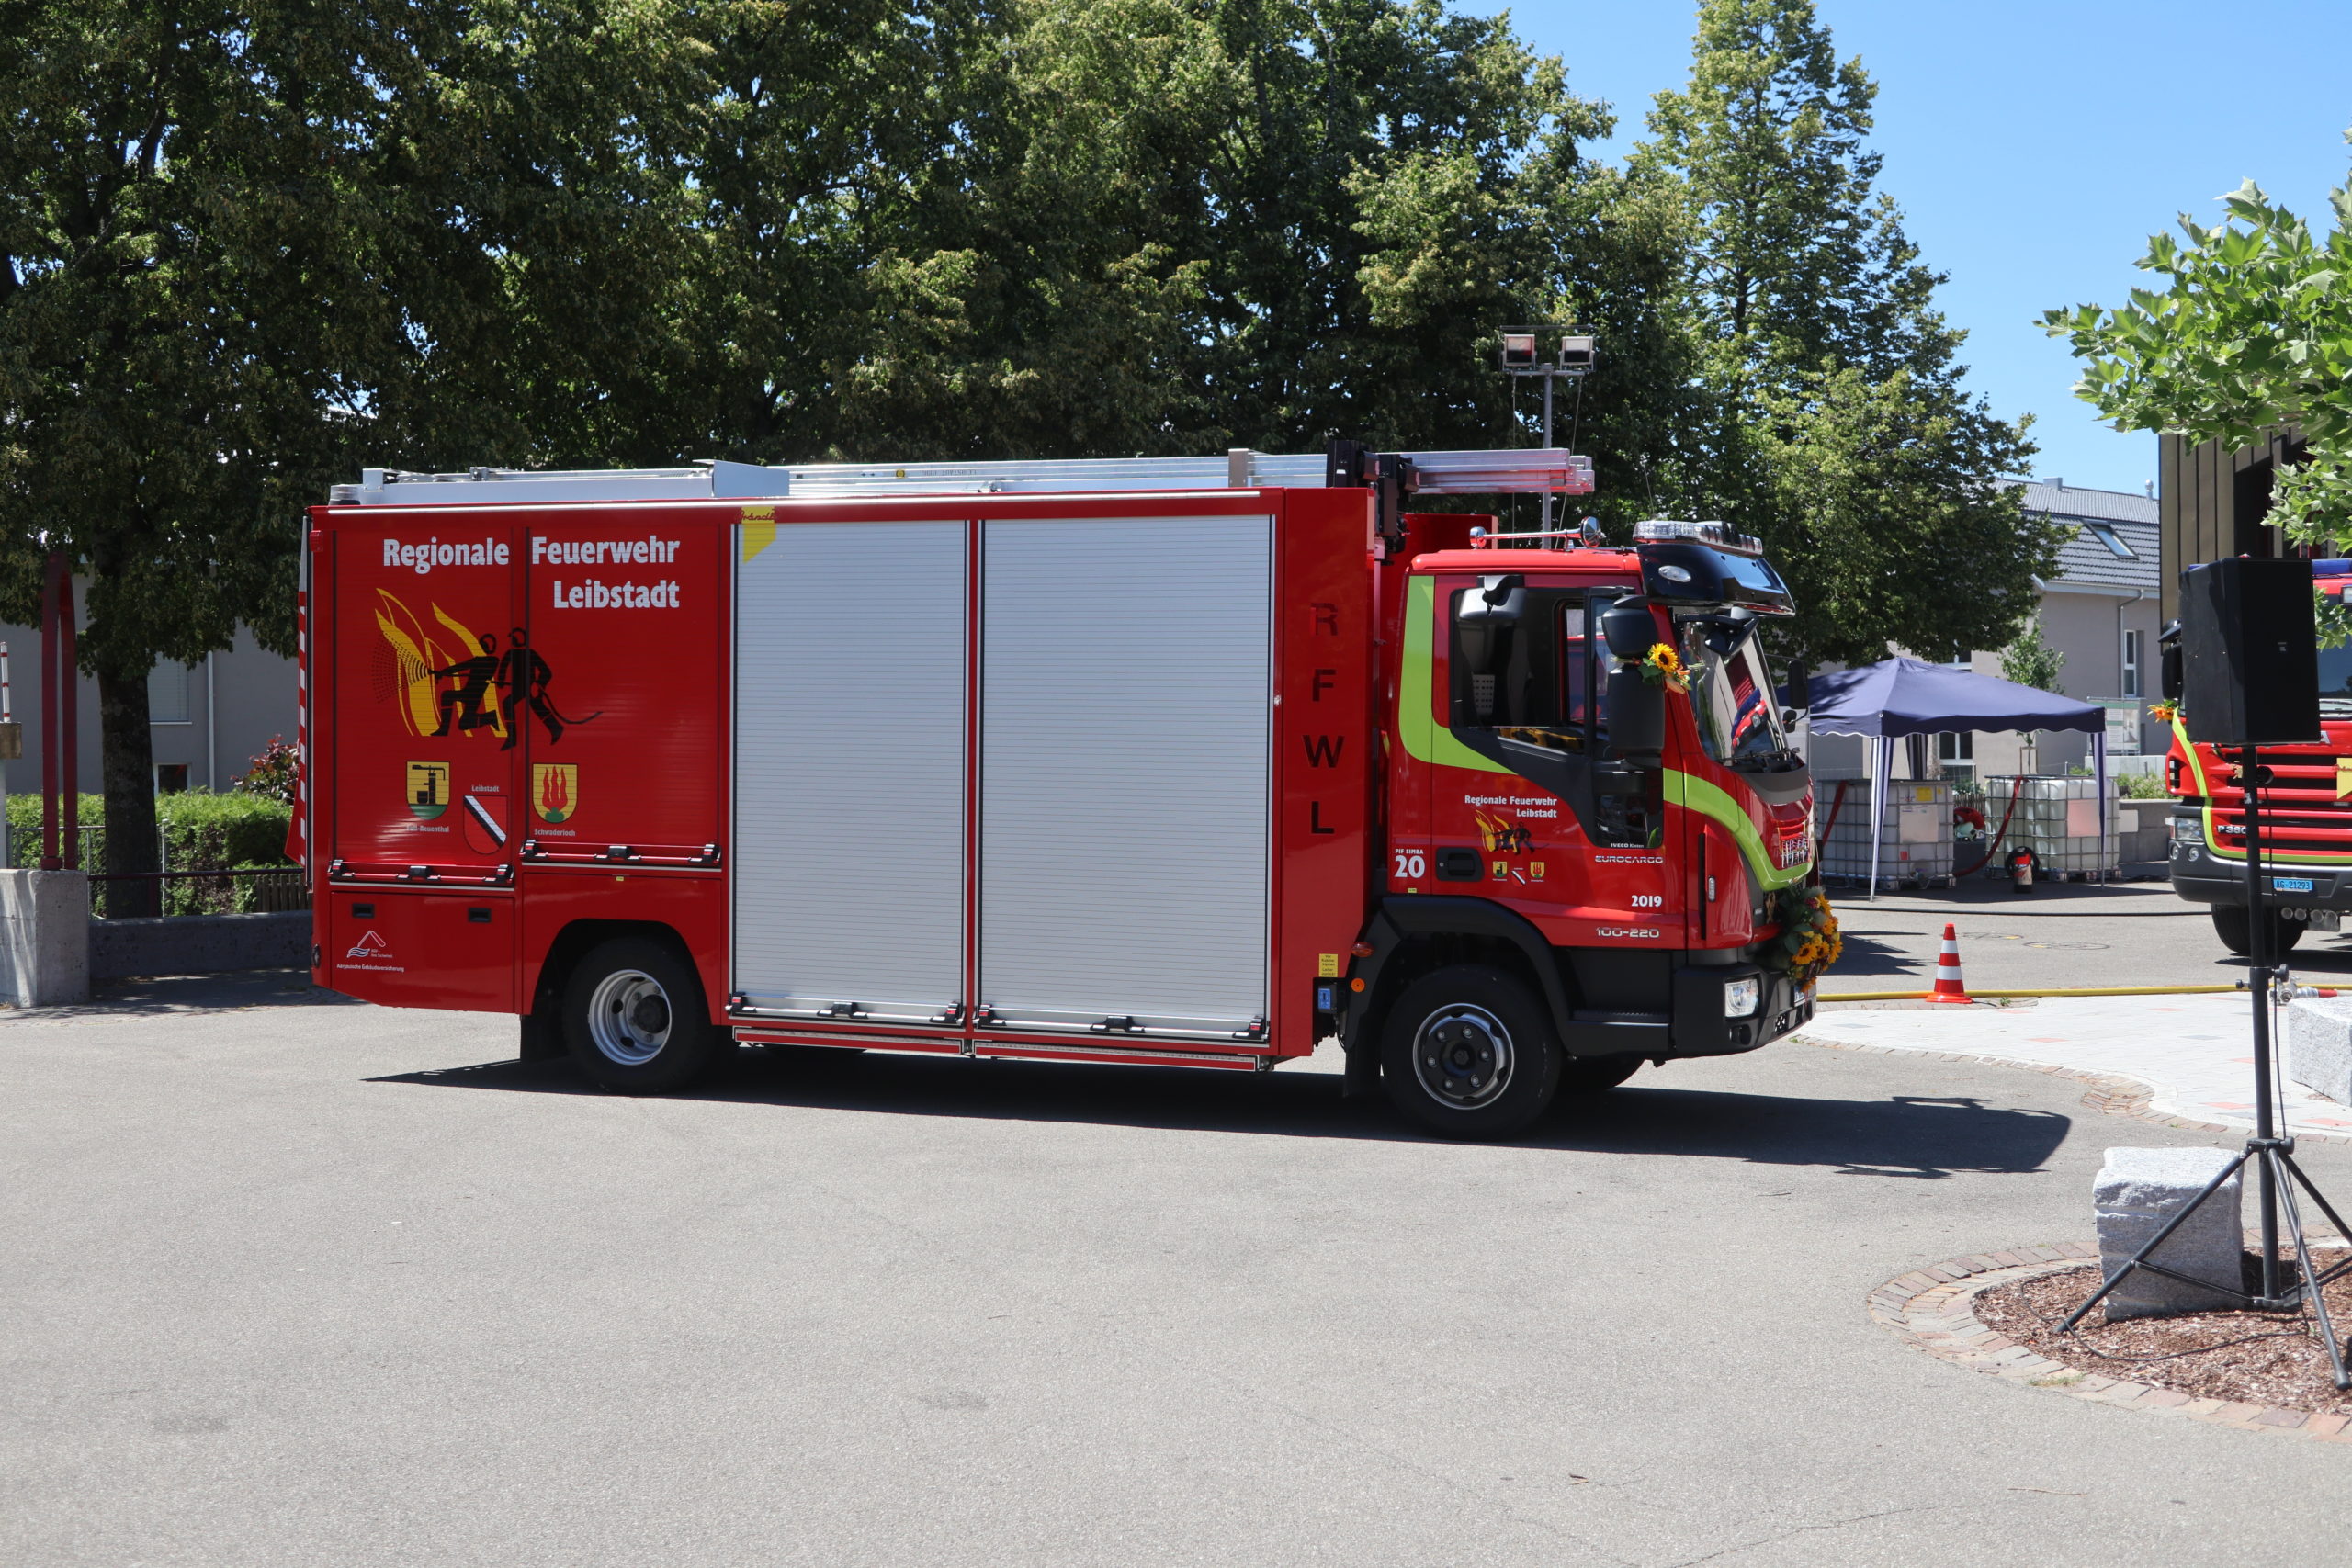 Feuerwehr Hauptübung und Fahrzeugeinweihung in Leibstadt 2019